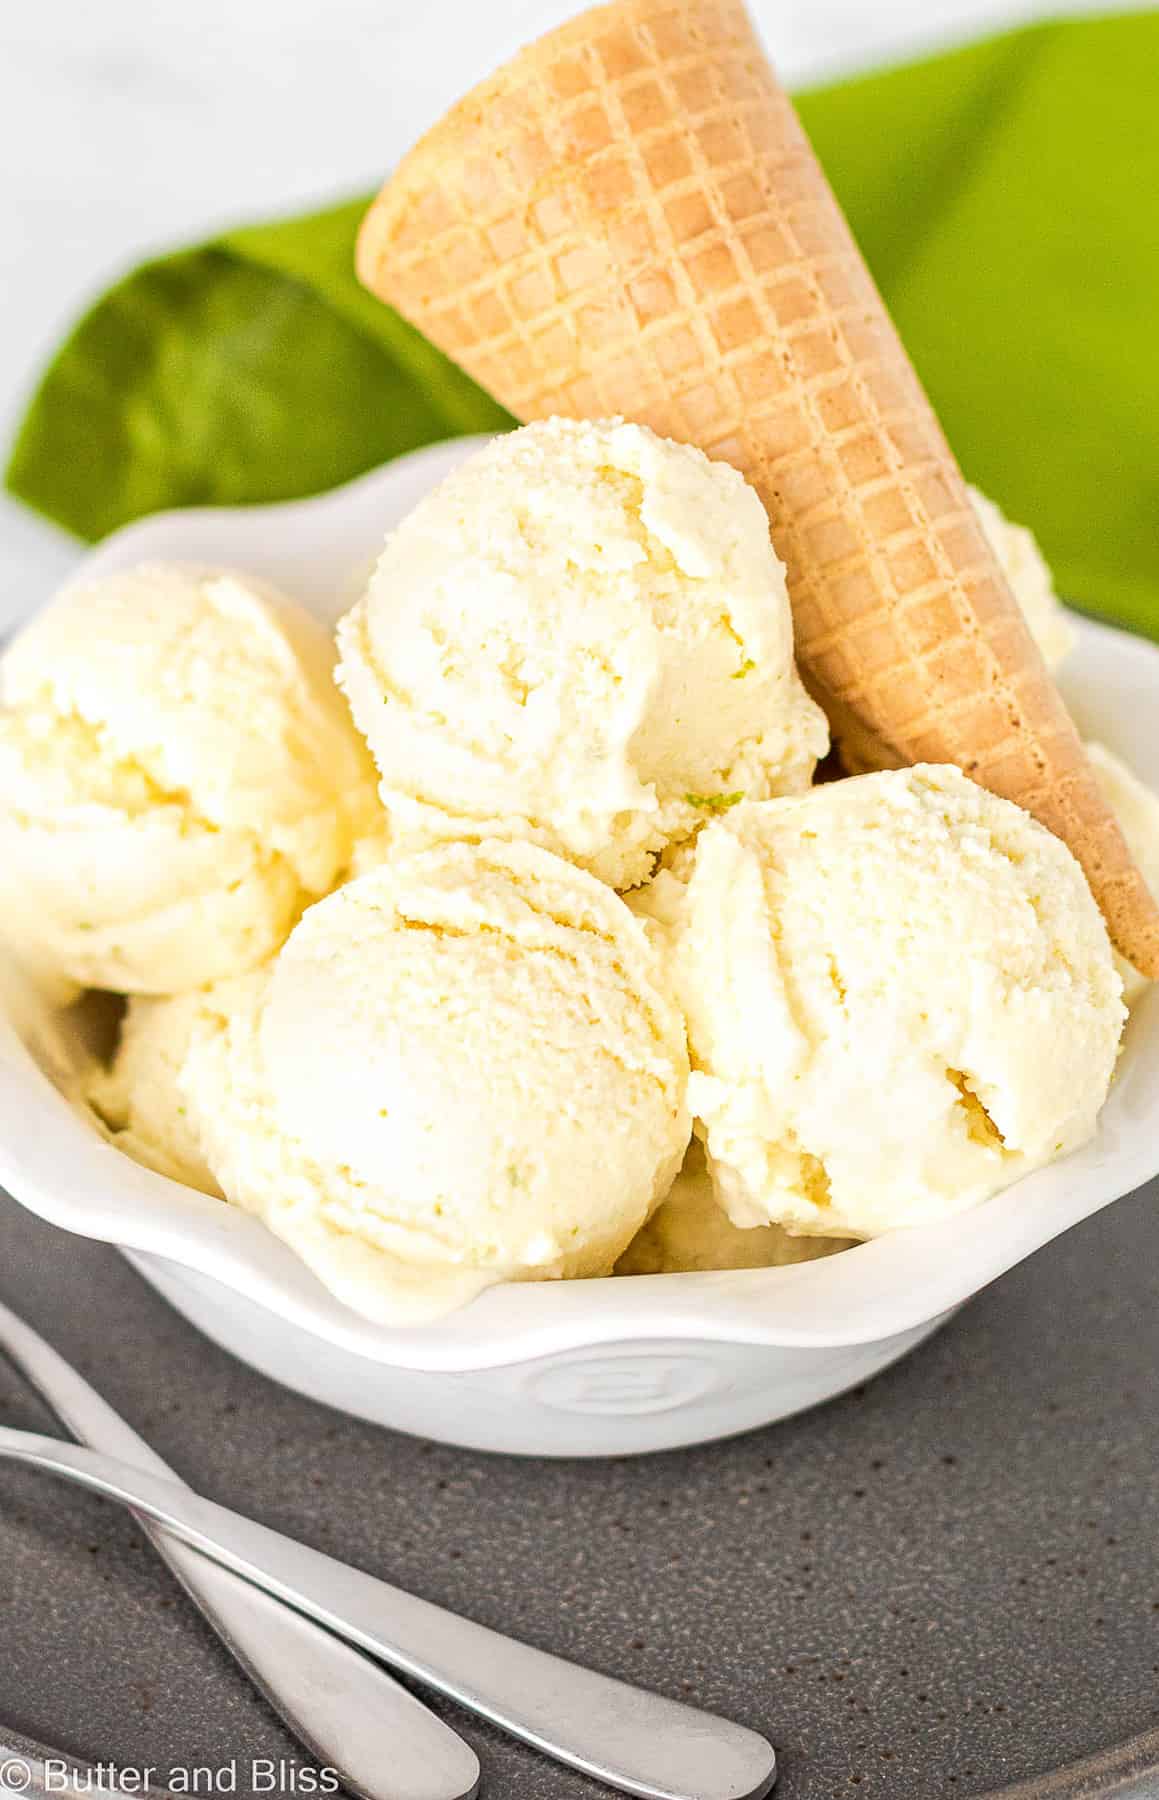 Pretty white bowl of scoops of pina colada dairy free ice cream with a sugar cone garnish.